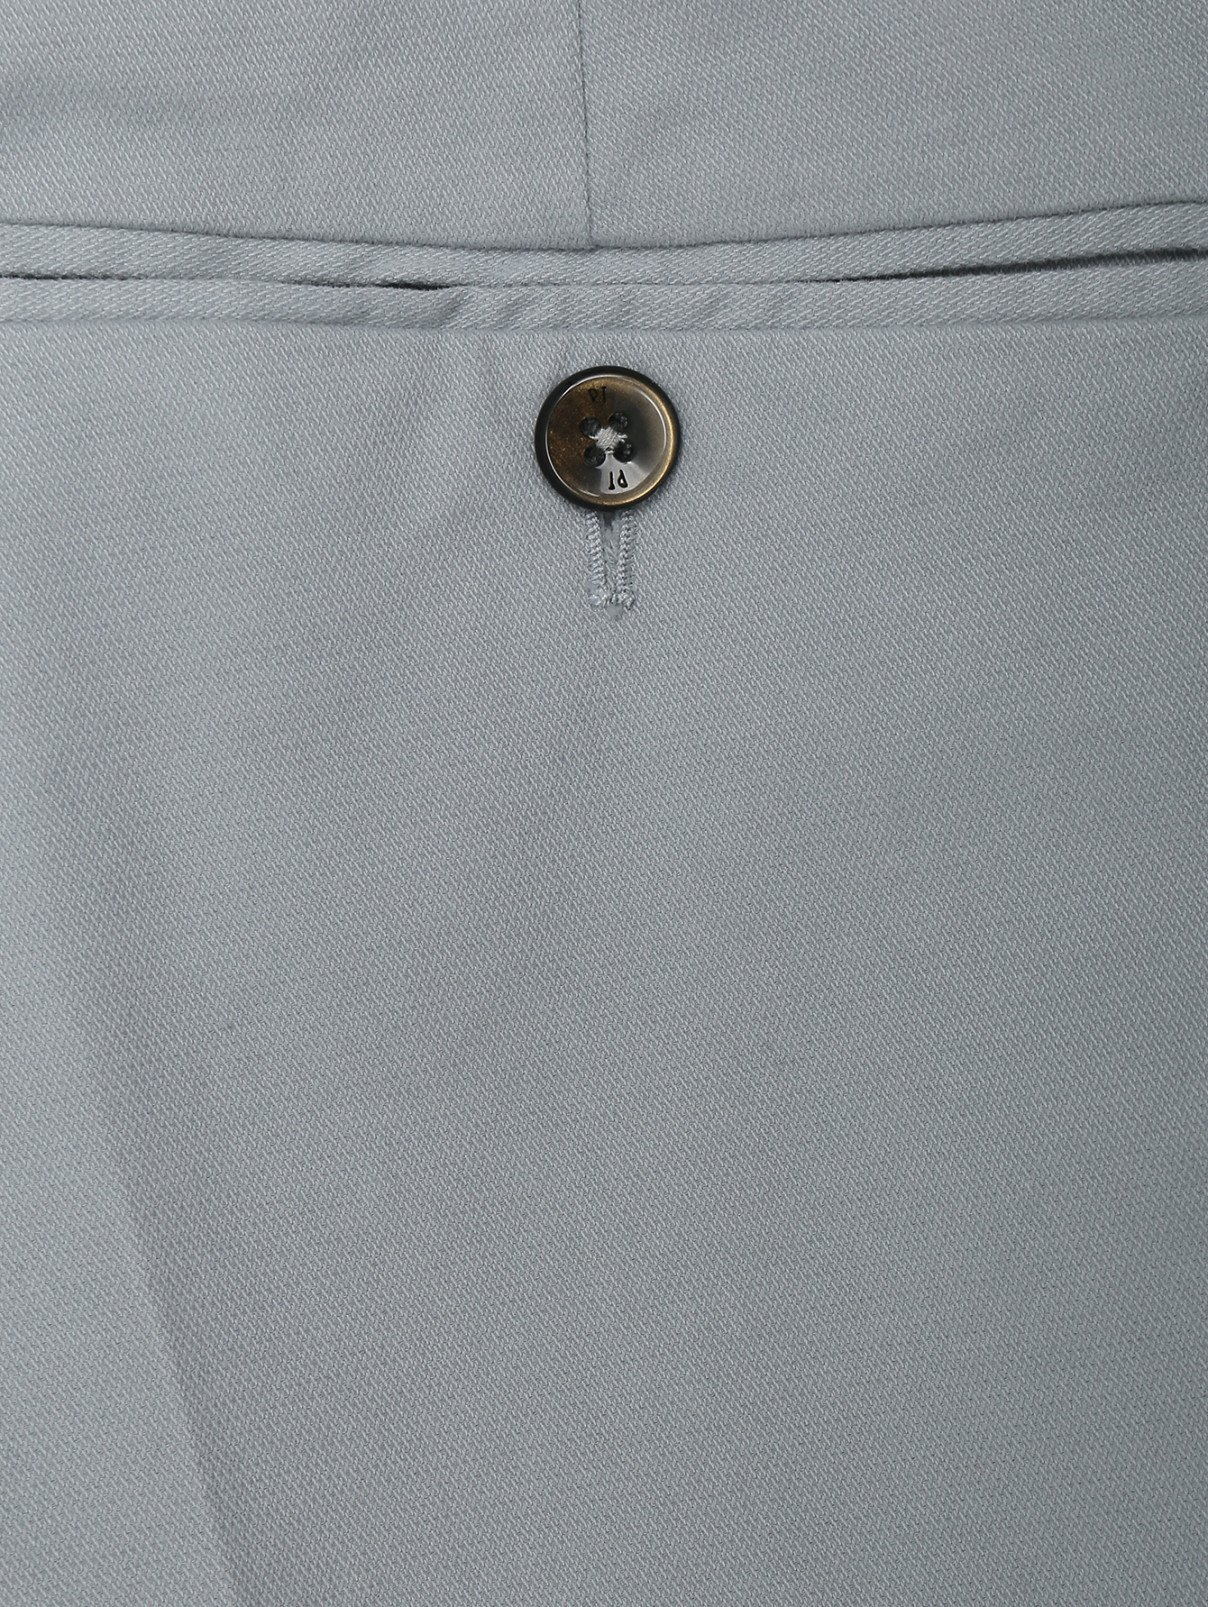 Брюки из шерсти и шелка с карманами PT Torino  –  Деталь1  – Цвет:  Серый